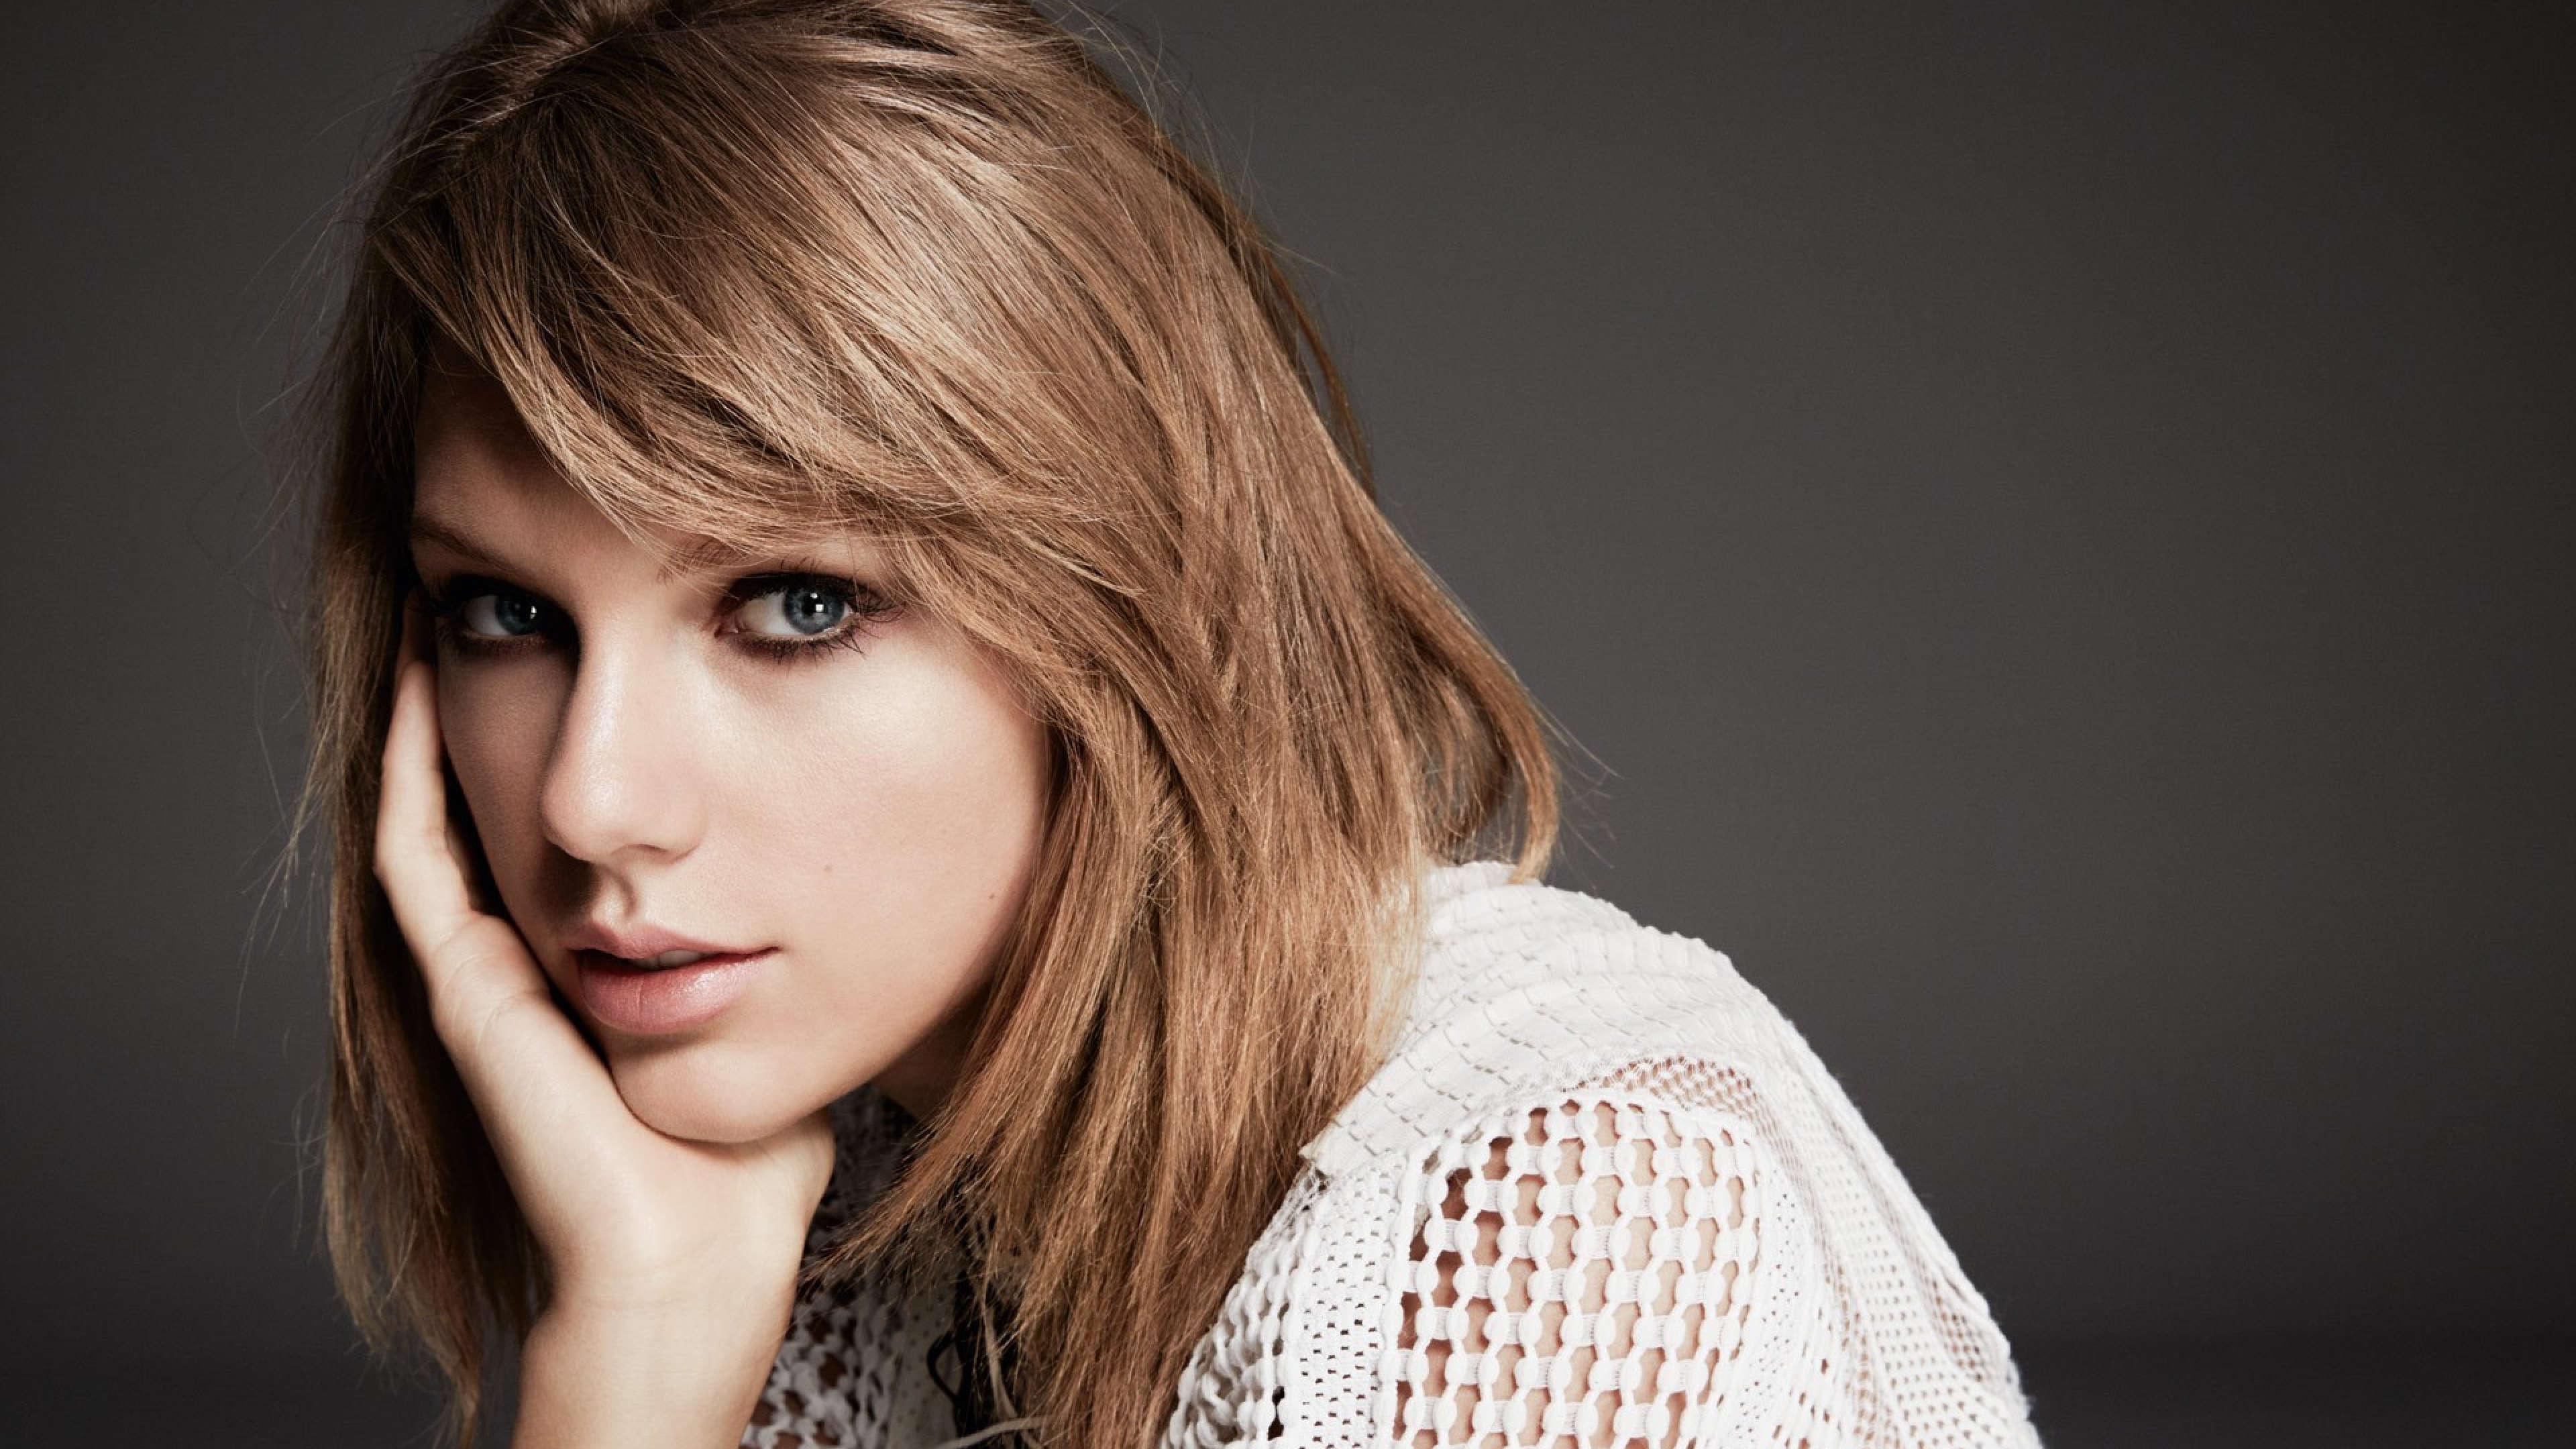 Taylor Swift Desktop Wallpaper Free Taylor Swift